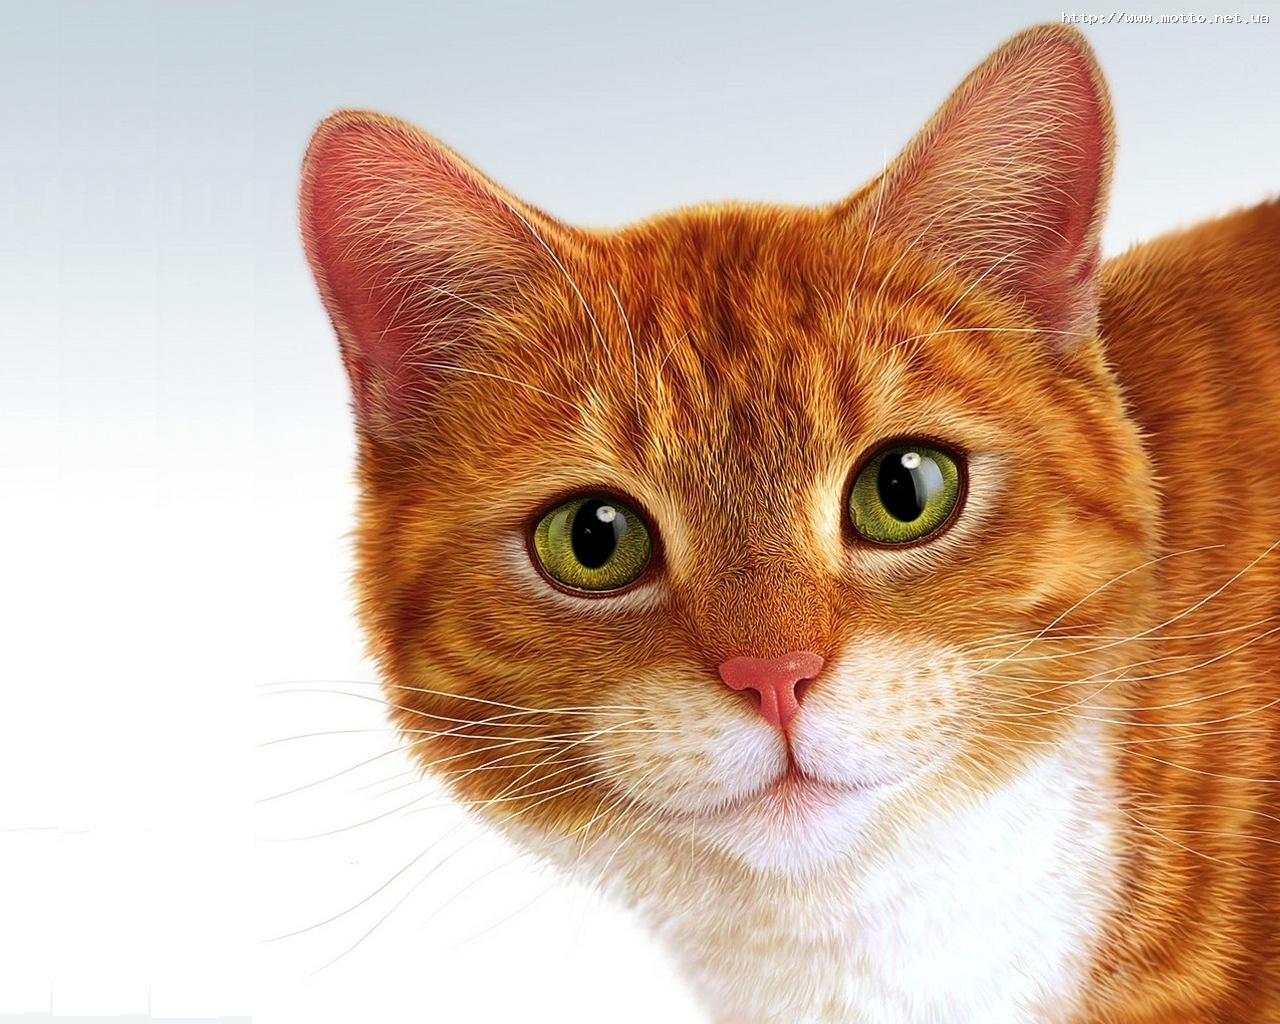 Descarga gratuita de fondo de pantalla para móvil de Imágenes, Animales, Gatos.